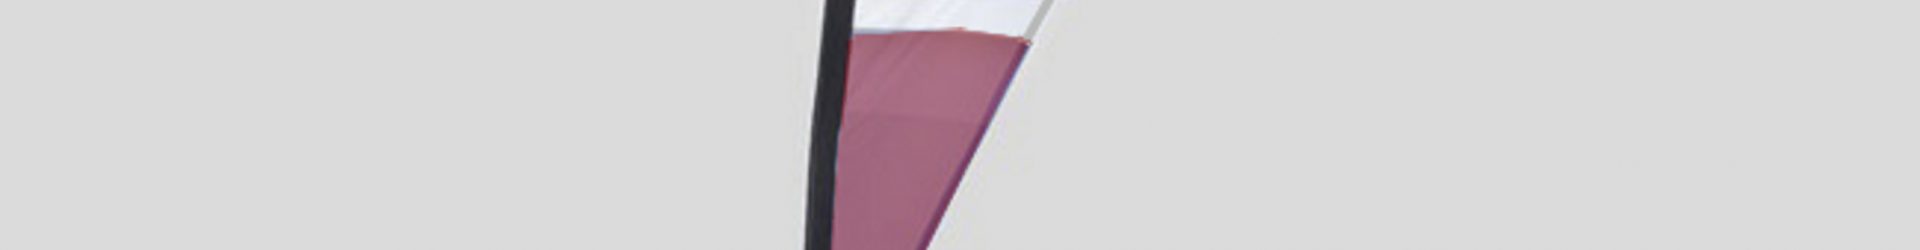 Bandiera pubblicitaria a goccia H.200cm